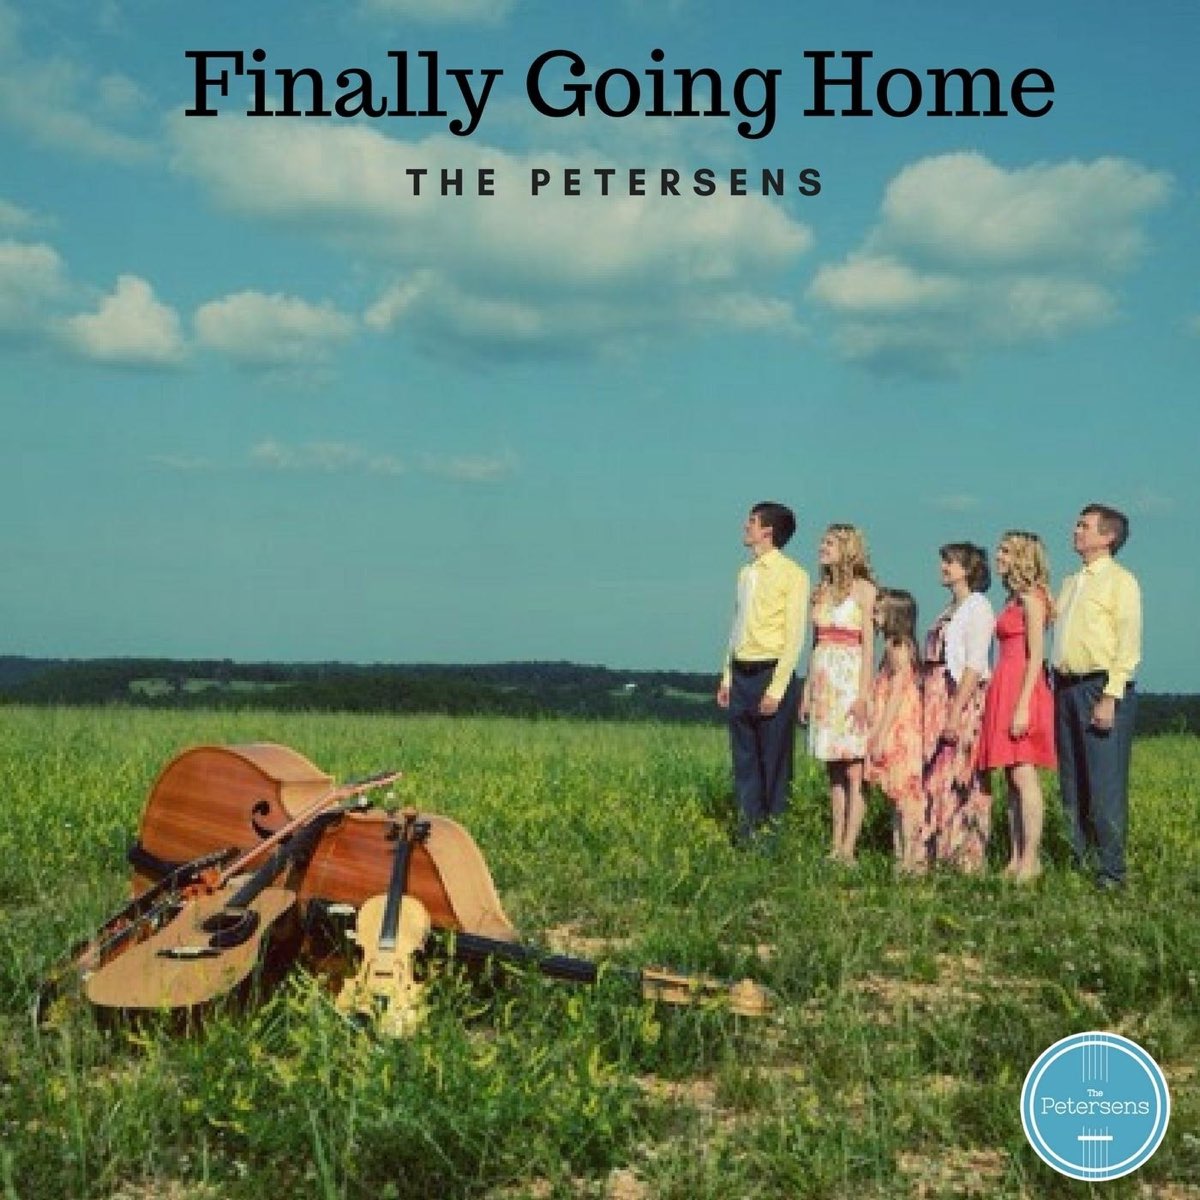 Get going песня. The Petersens группа. The Petersens фото. Going Home песня. Going Home dvorzakноты.